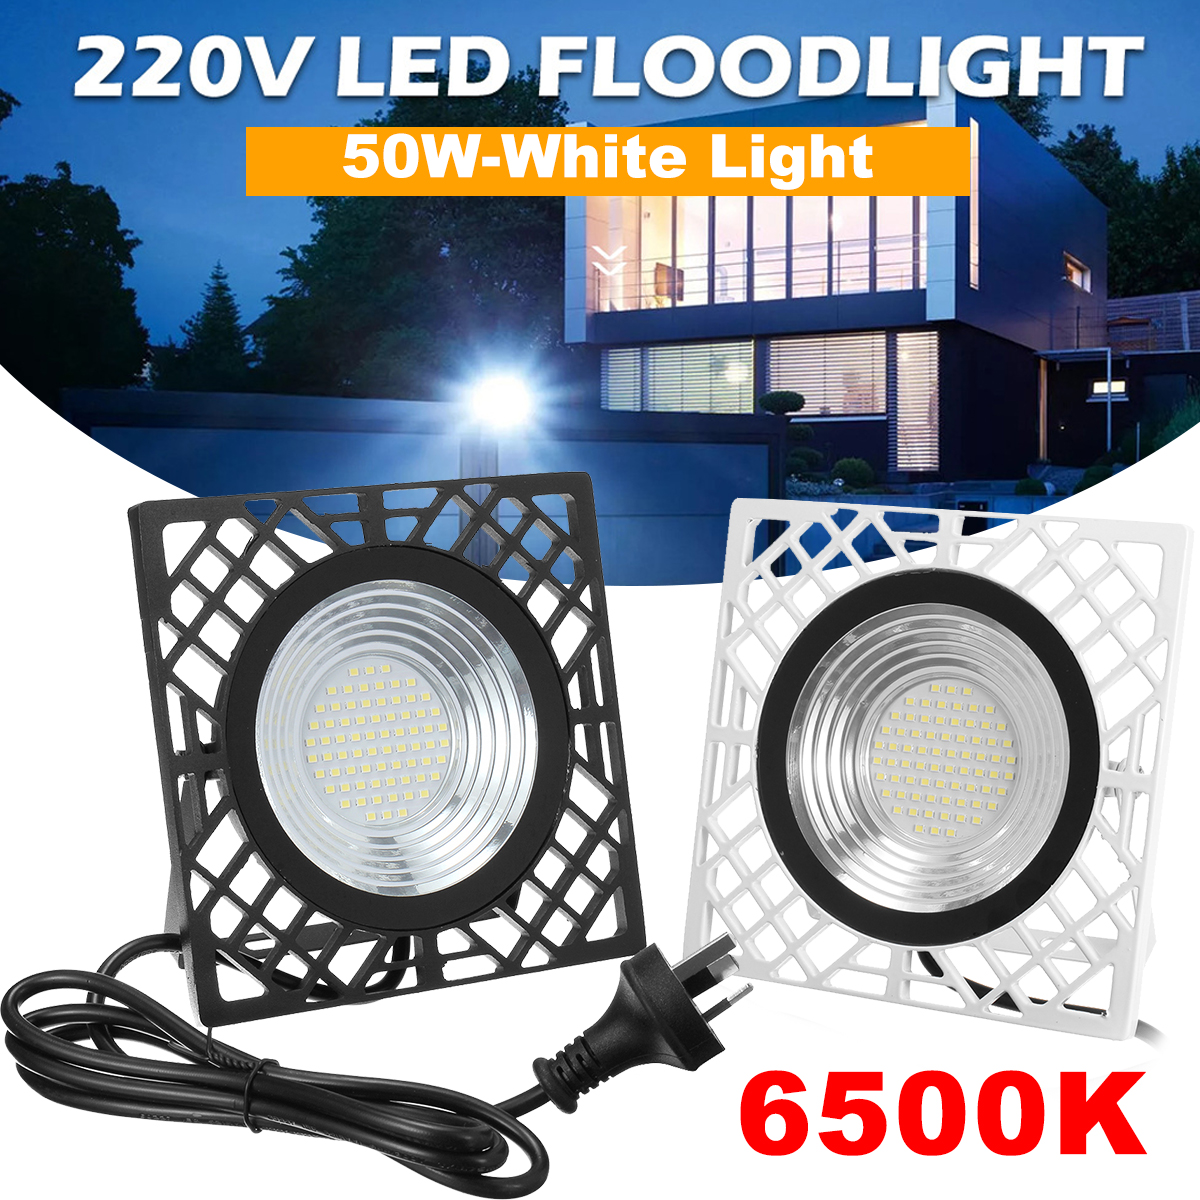 50W-LED-Flood-Light-110V220V--IP65-Waterproof-Outdoor-LED-Lamp-With-Adjustable-Angle-Bracket-Suitabl-1943488-1